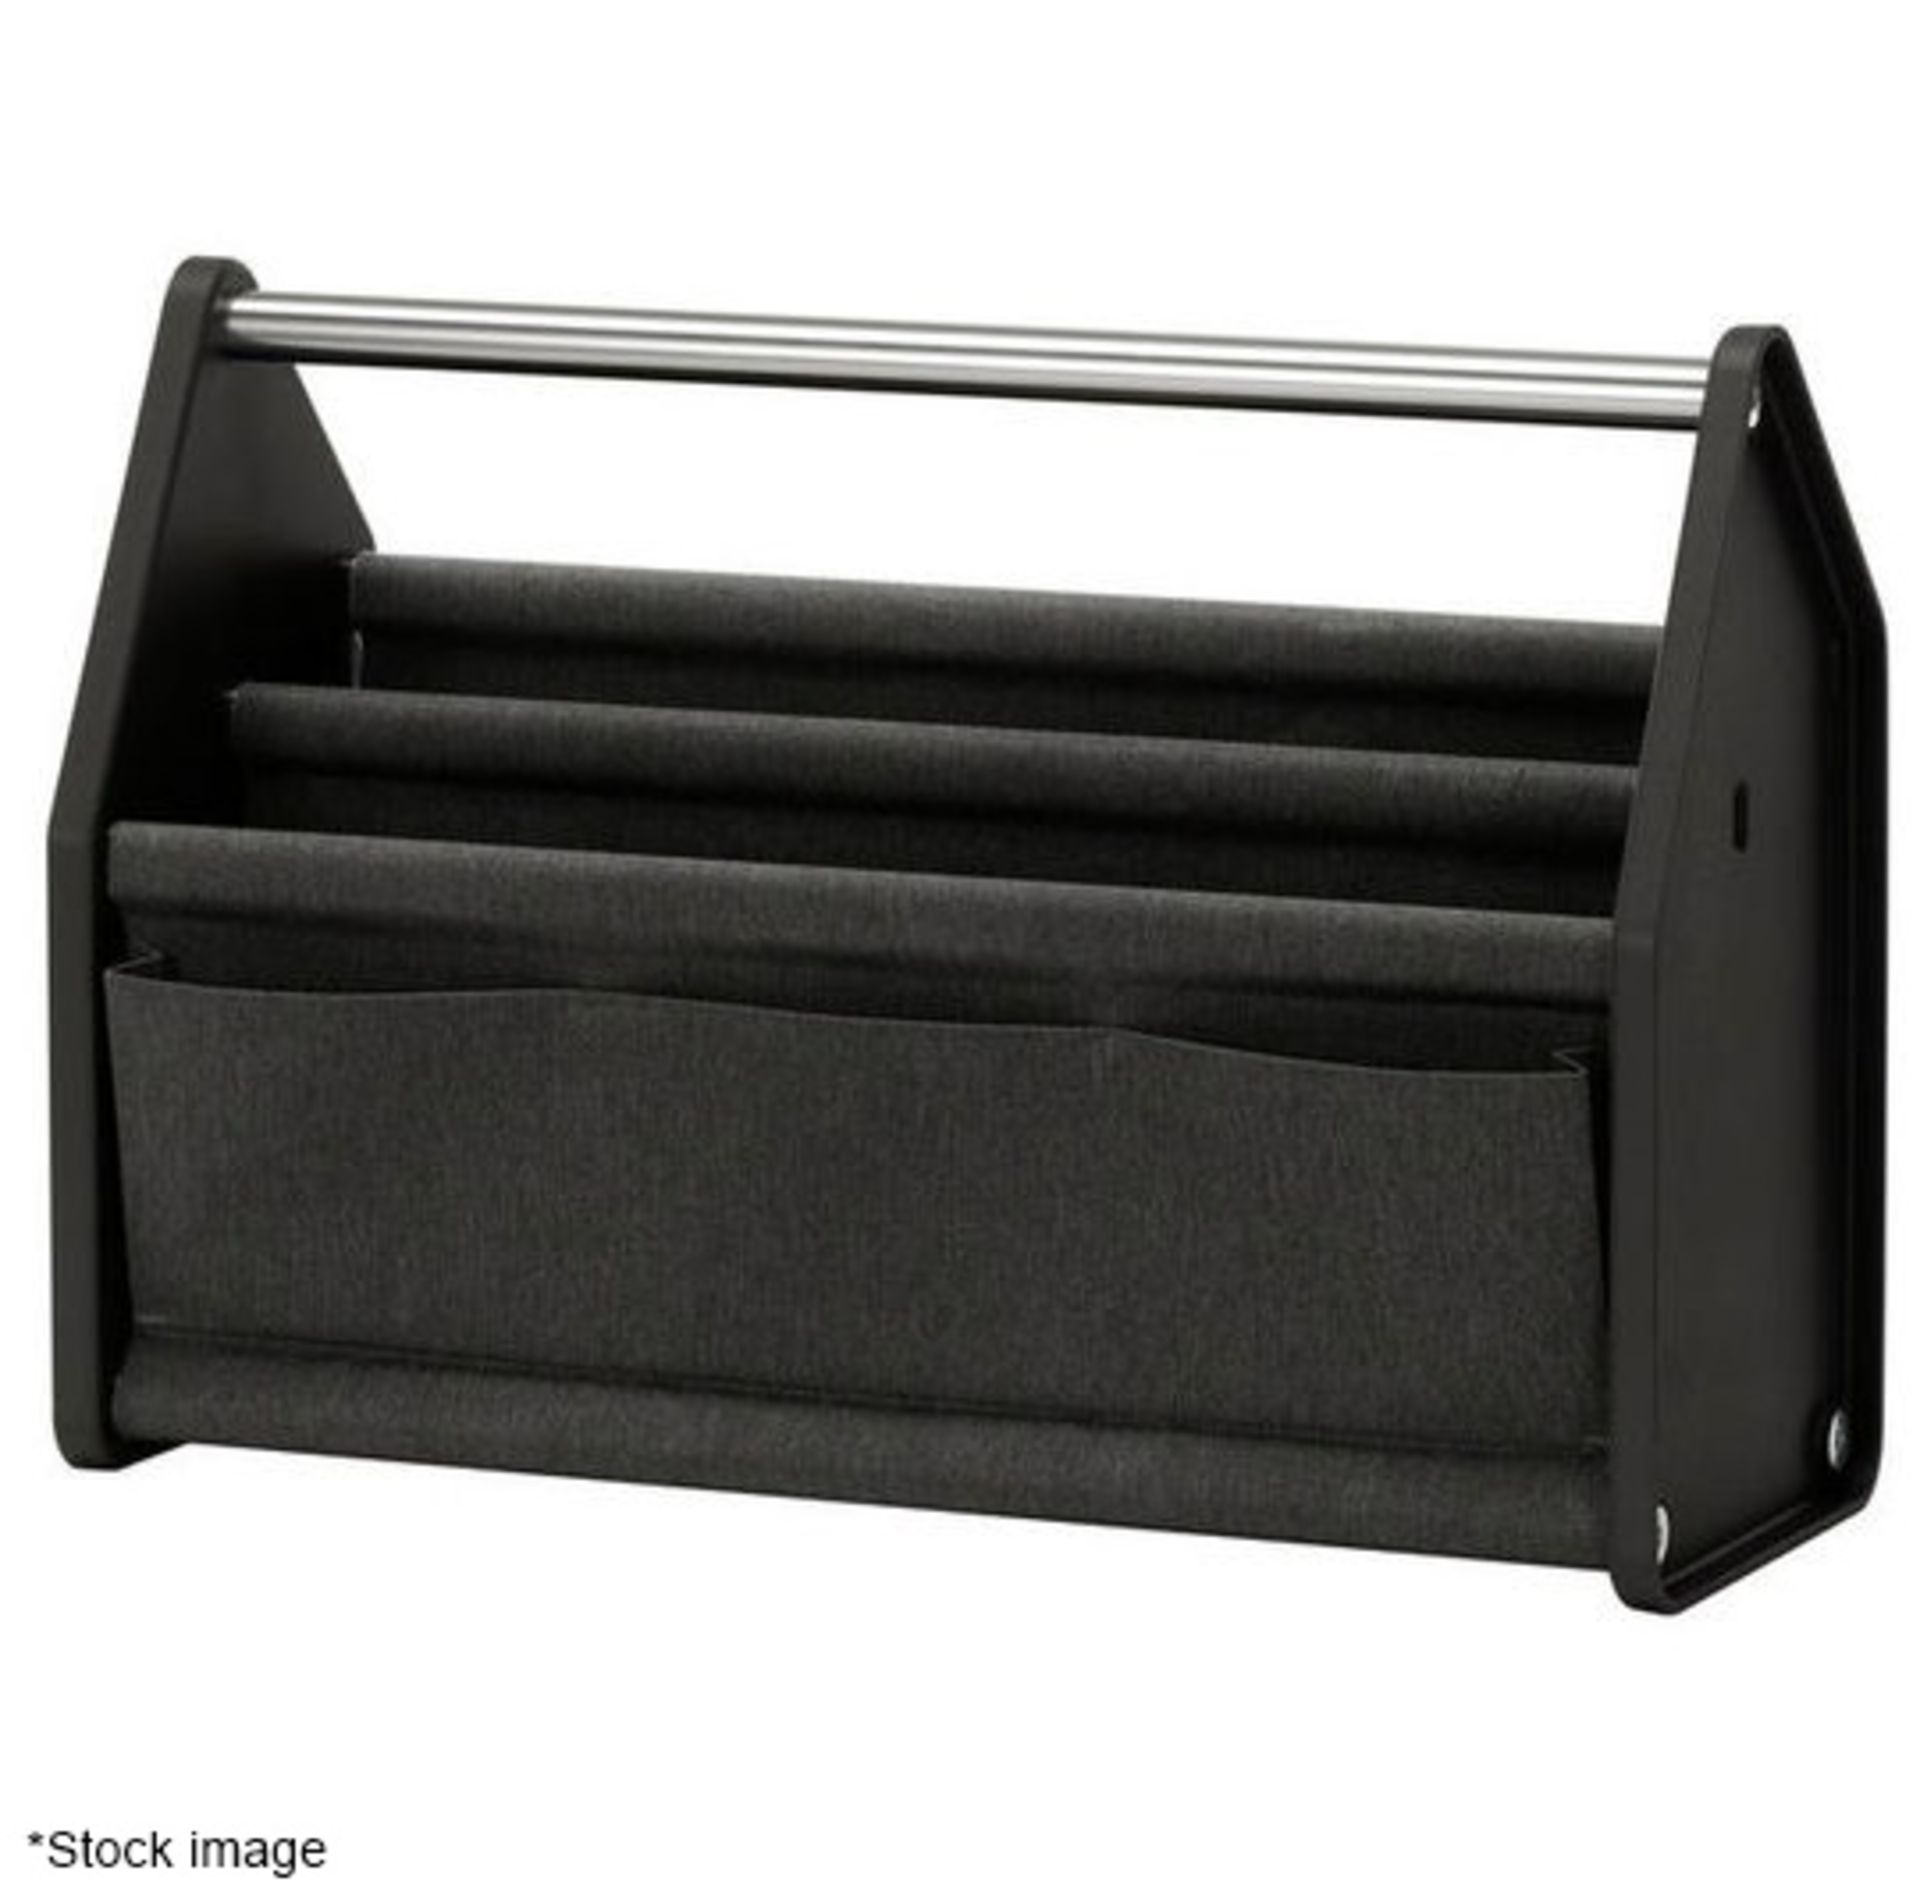 1 x VITRA 'Locker Box' Designer Portable Desk Organiser in Black & Grey - Original Price £185.00 - Image 6 of 6